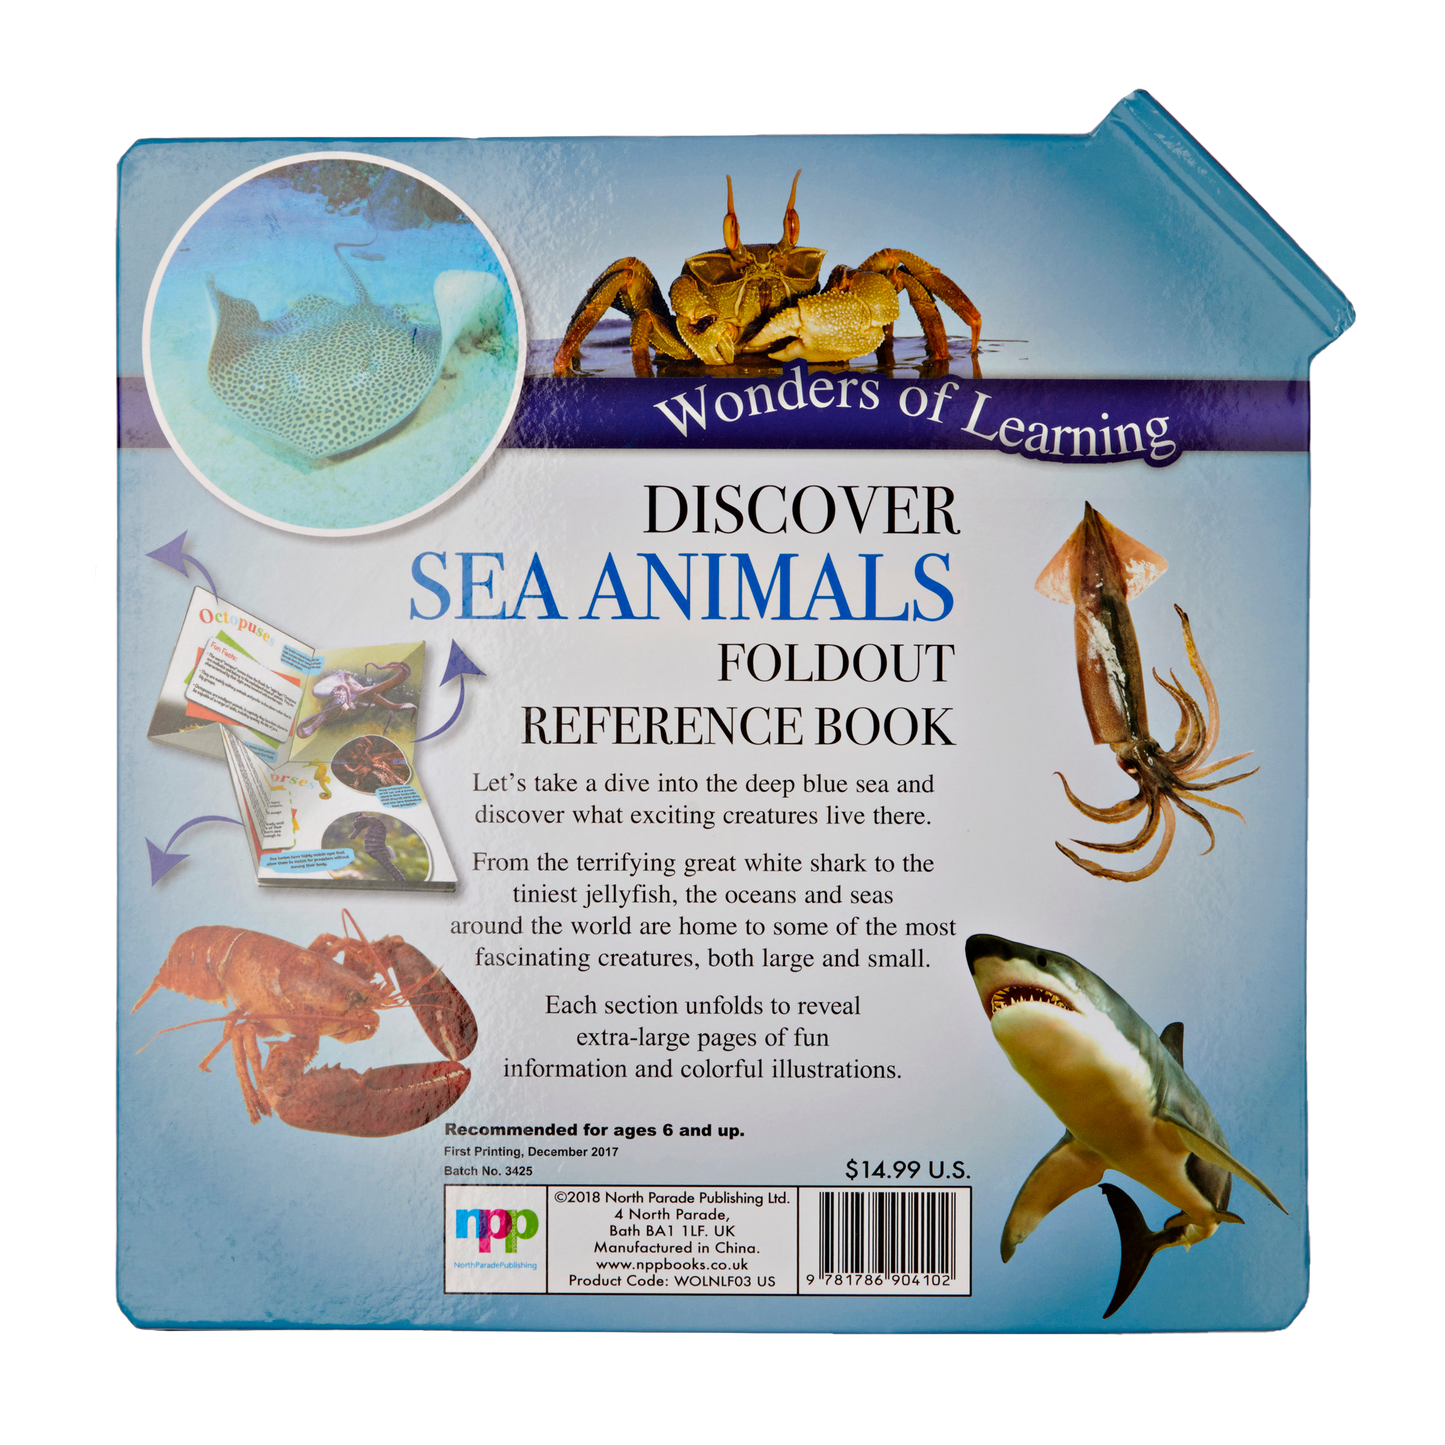 Découvrez le livre de référence dépliant des animaux marins (merveilles de l'apprentissage)